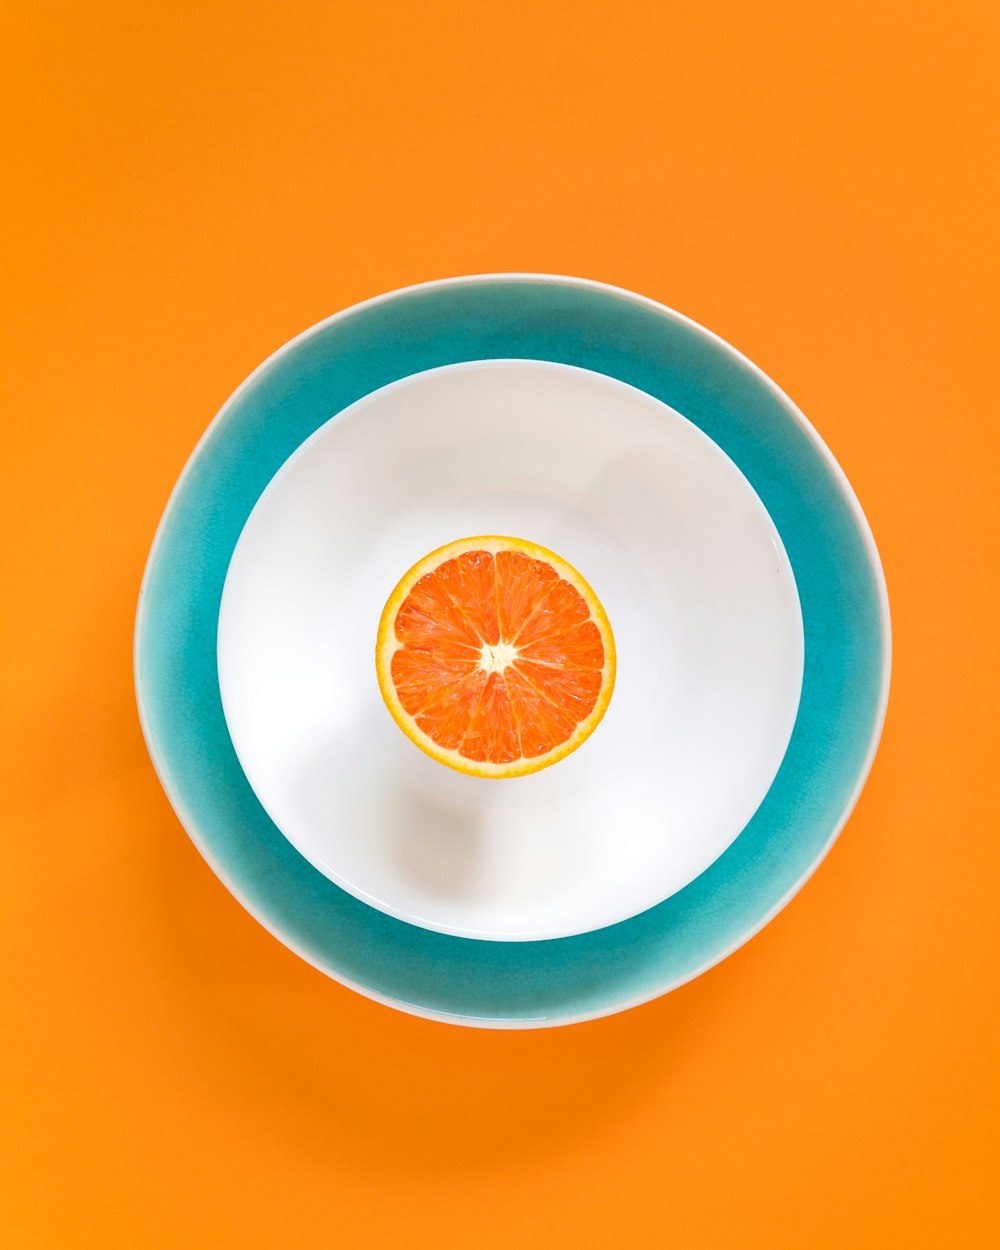 그릇에 얇게 썬 오렌지 과일